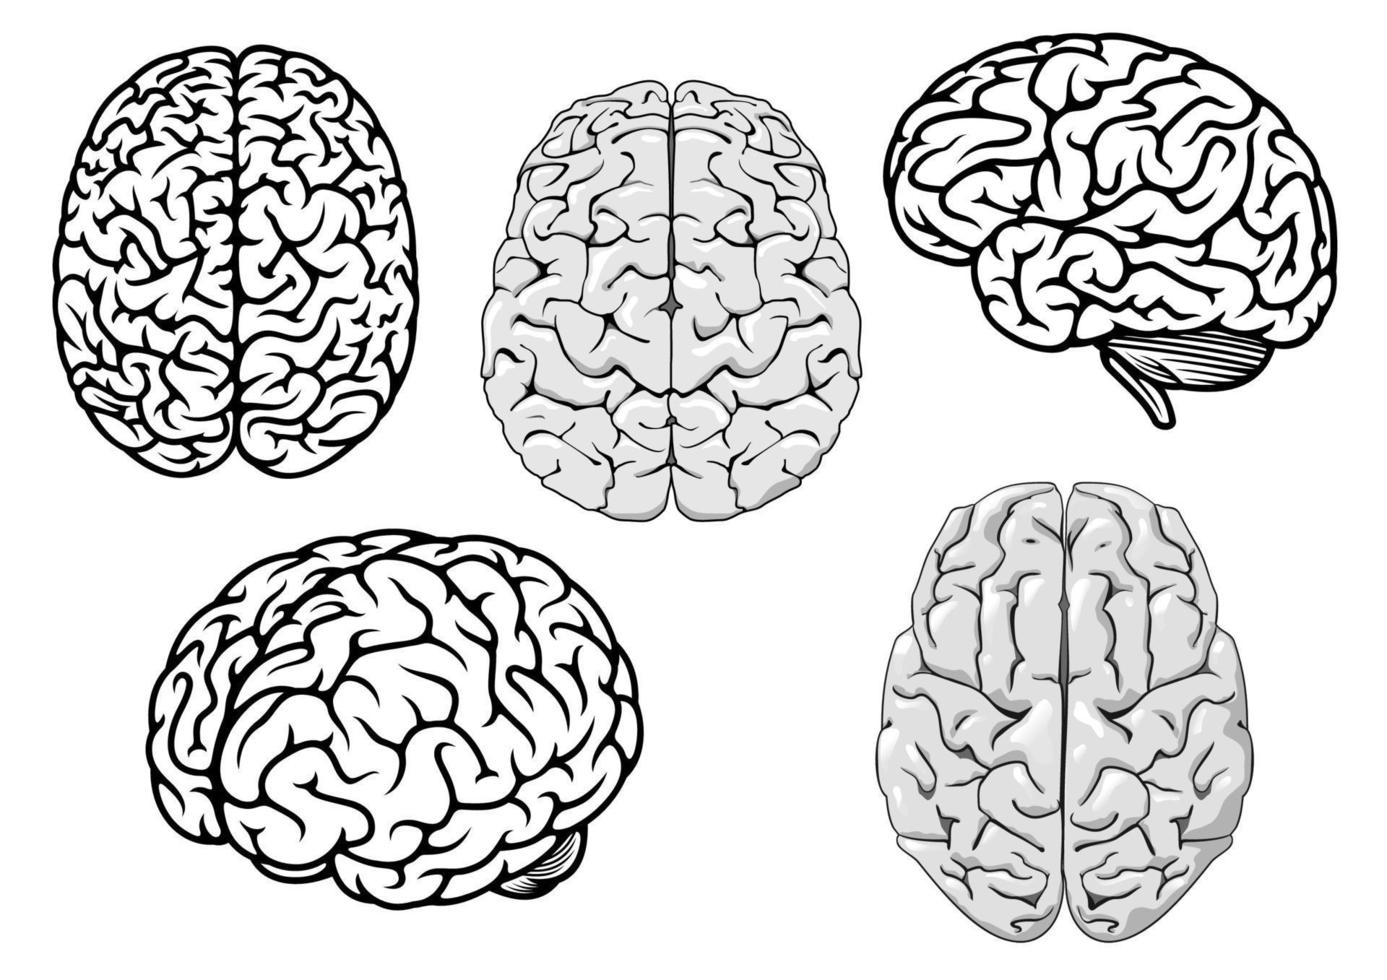 cerveaux humains de dessin animé noir et blanc vecteur